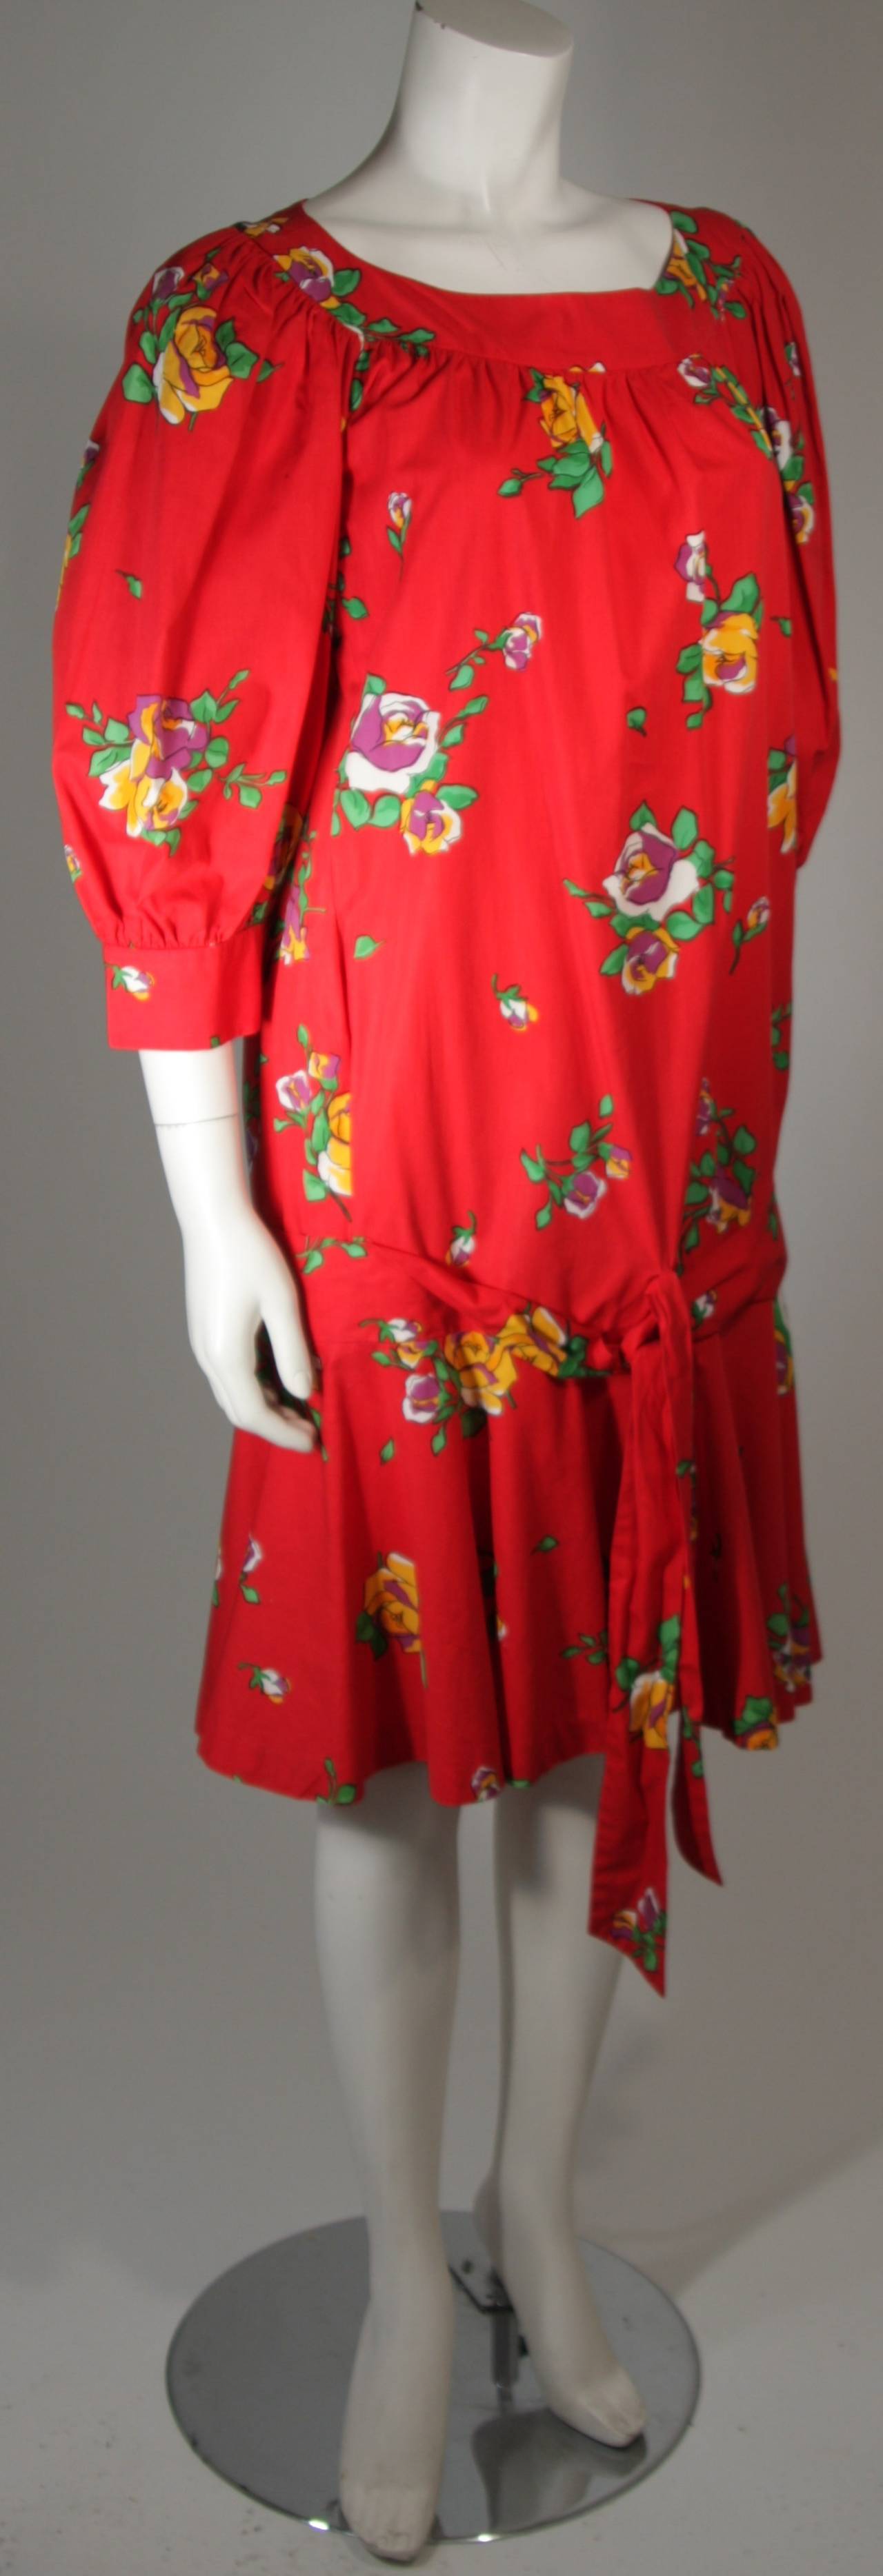 Women's Yves Saint Laurent Red Cotton Drop Waist Dress with Floral Motif Size 36 For Sale